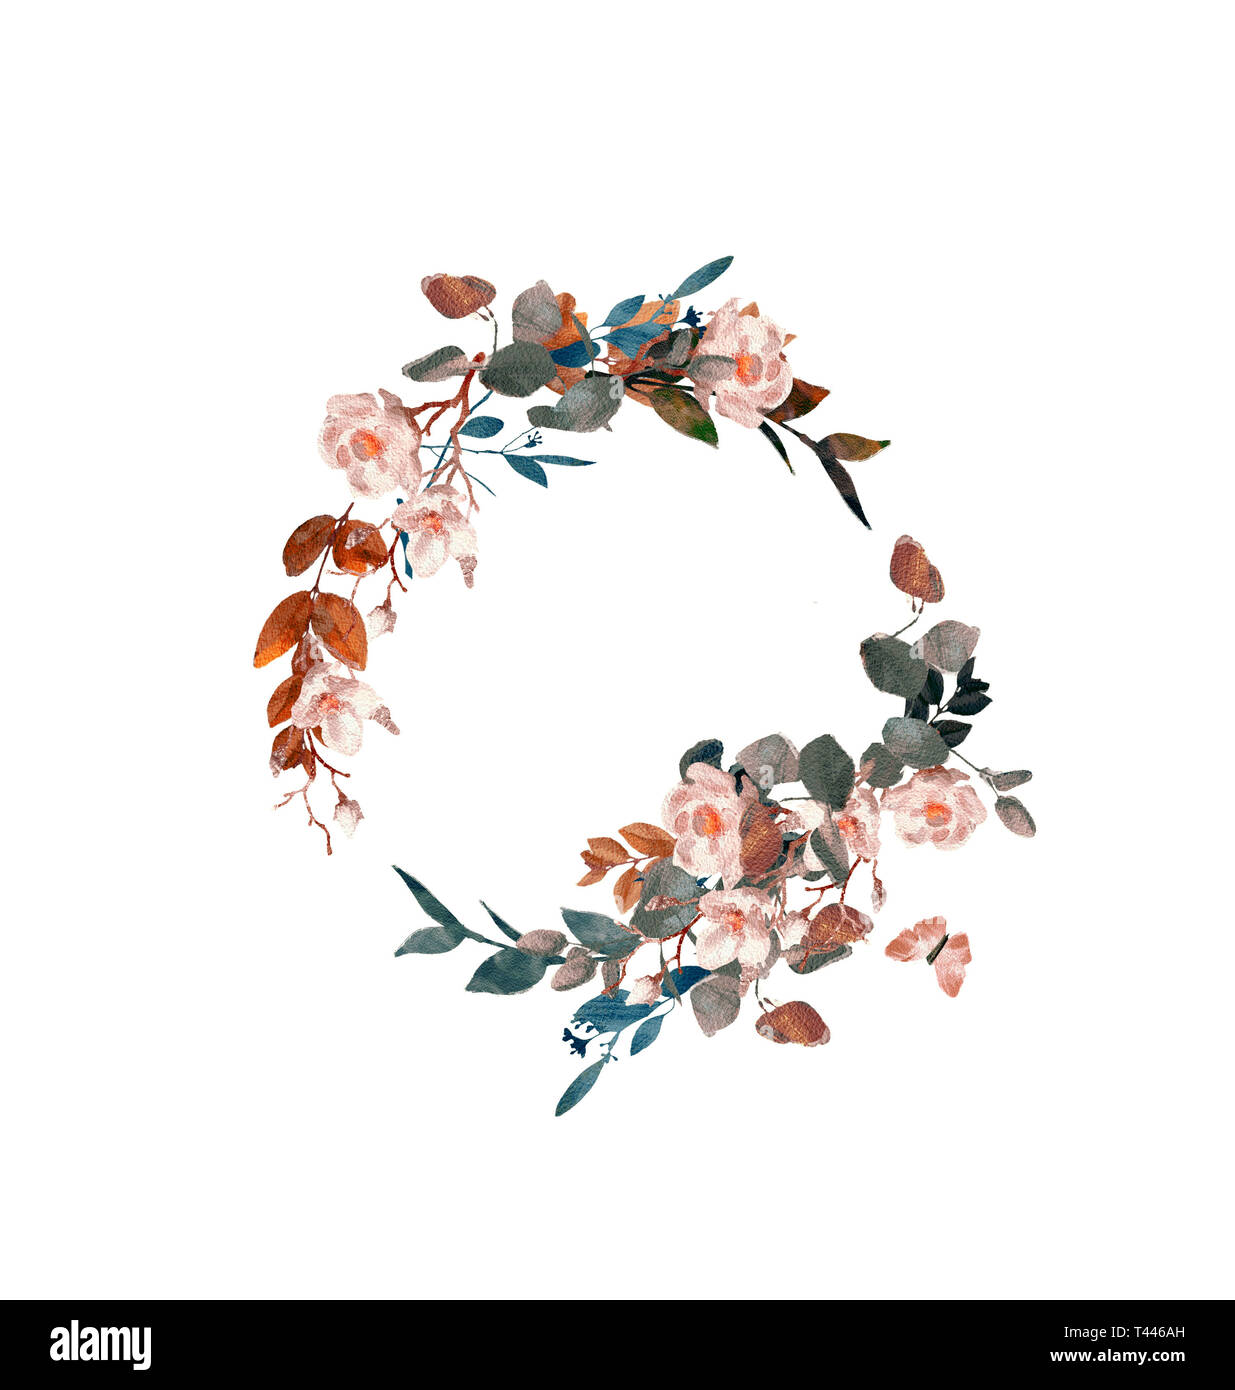 Handgemalten Aquarell blumen Kranz auf weißem Hintergrund. Kranz, Floral  frame, Aquarell Blumen, Rosen, Pfingstrosen und Abbildung von Hand gemalt  Stockfotografie - Alamy